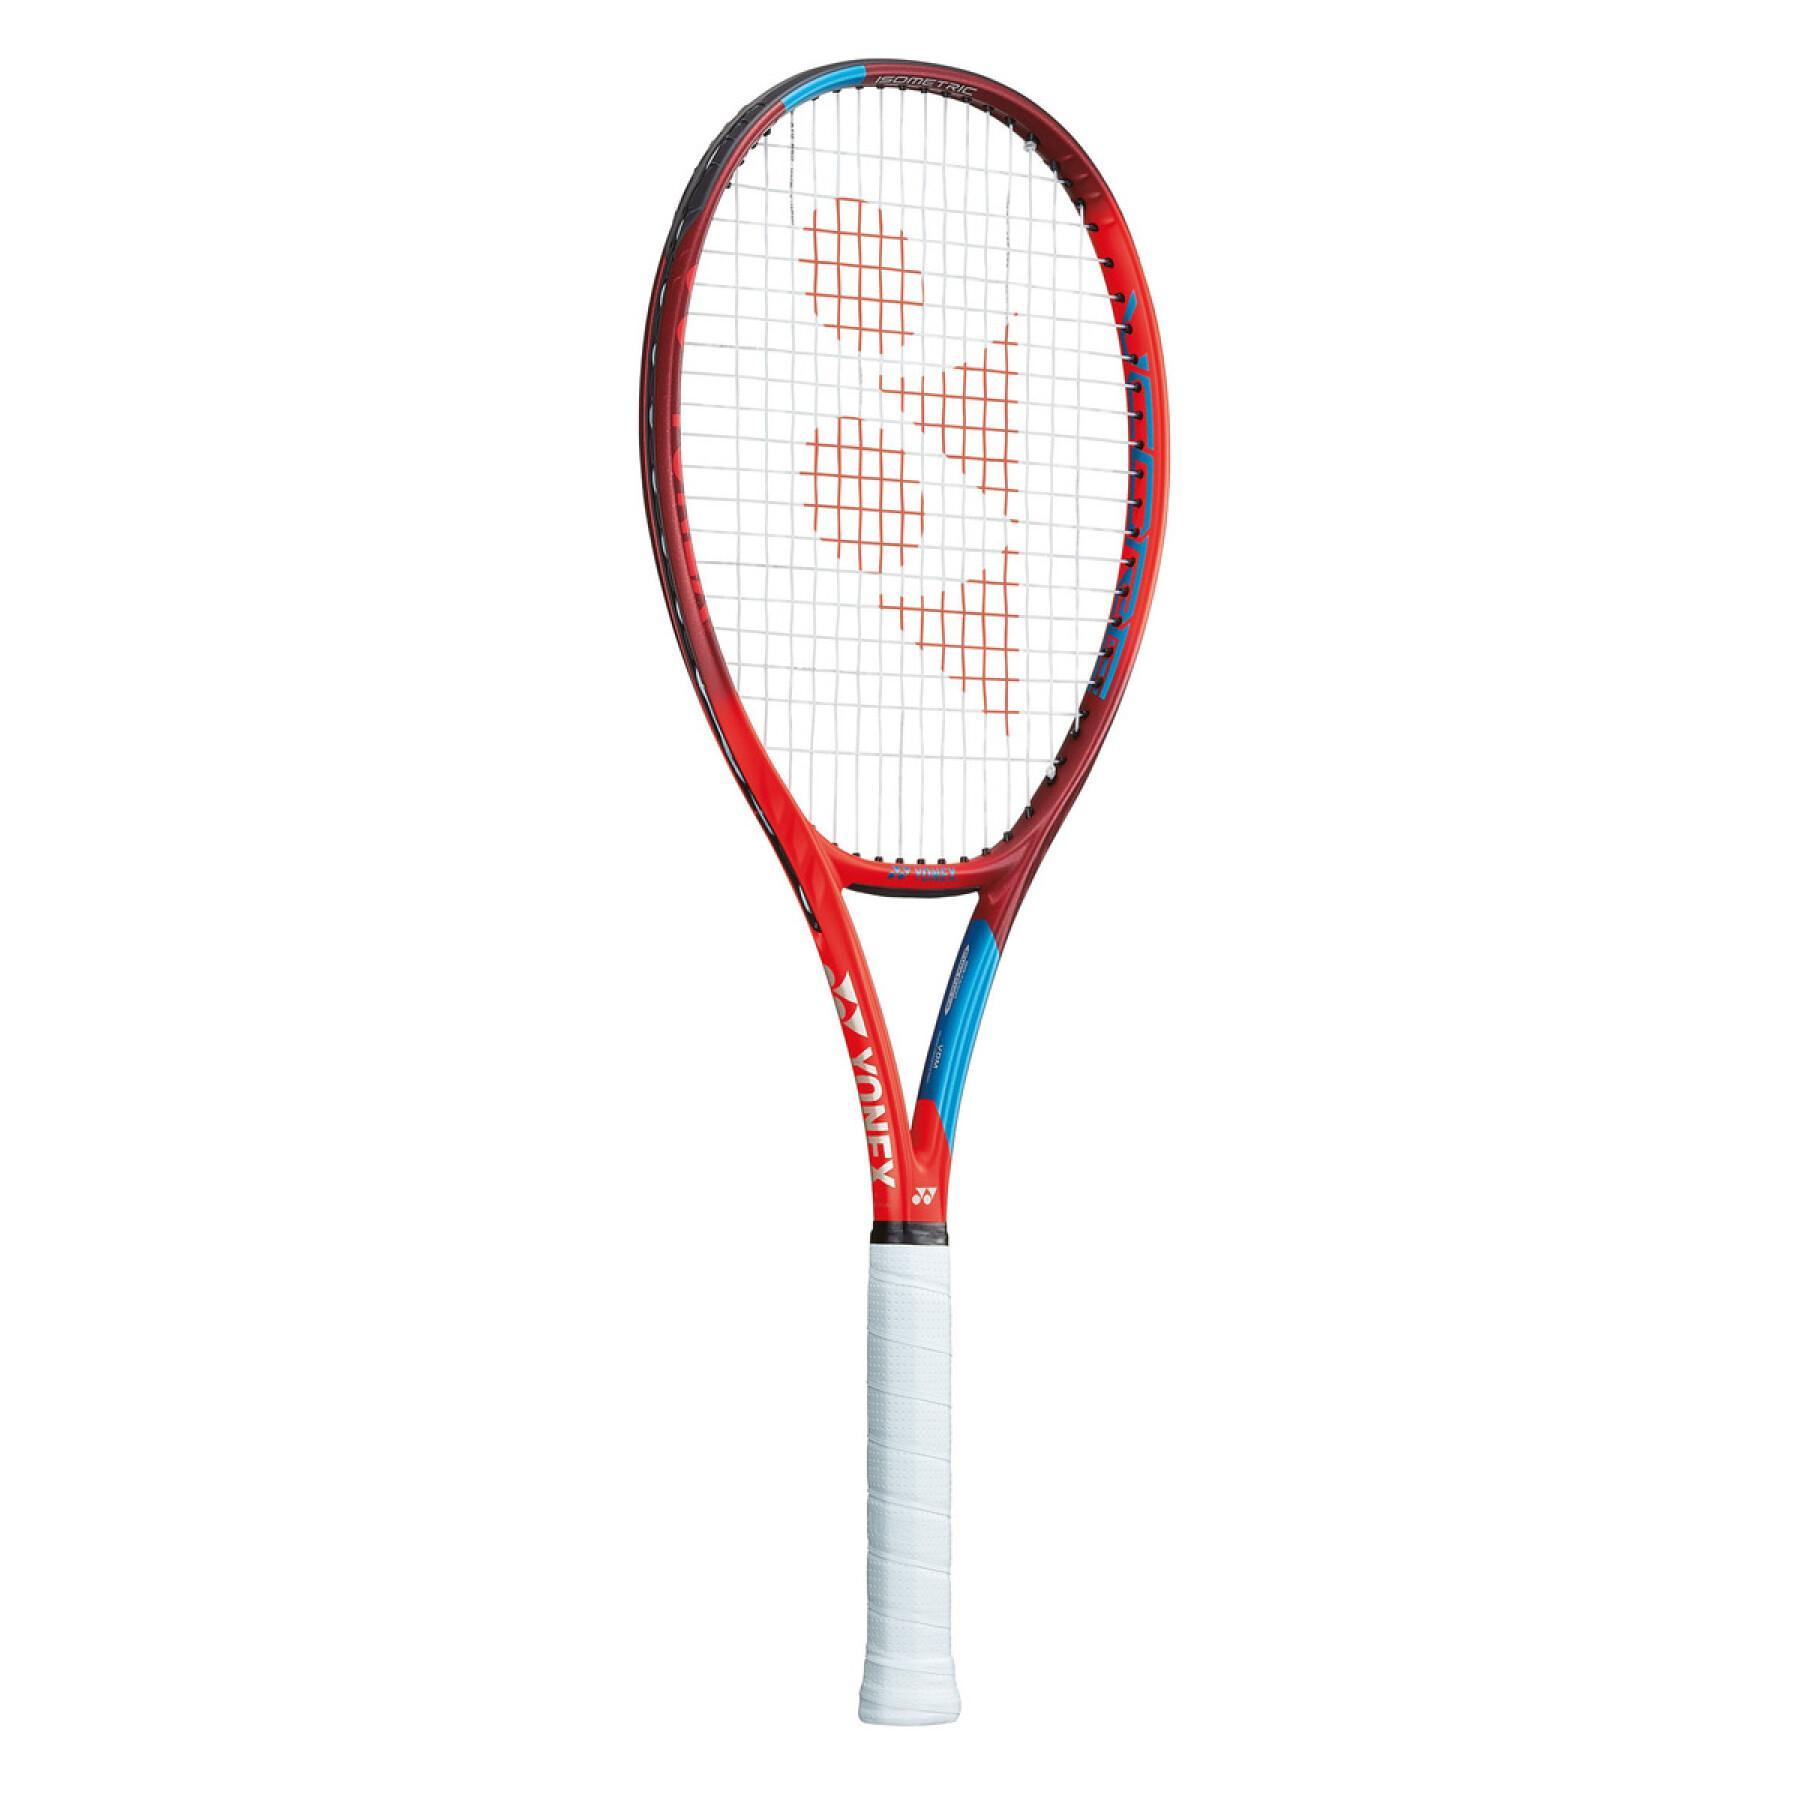 Tennis racket Yonex Vcore 98 l nc